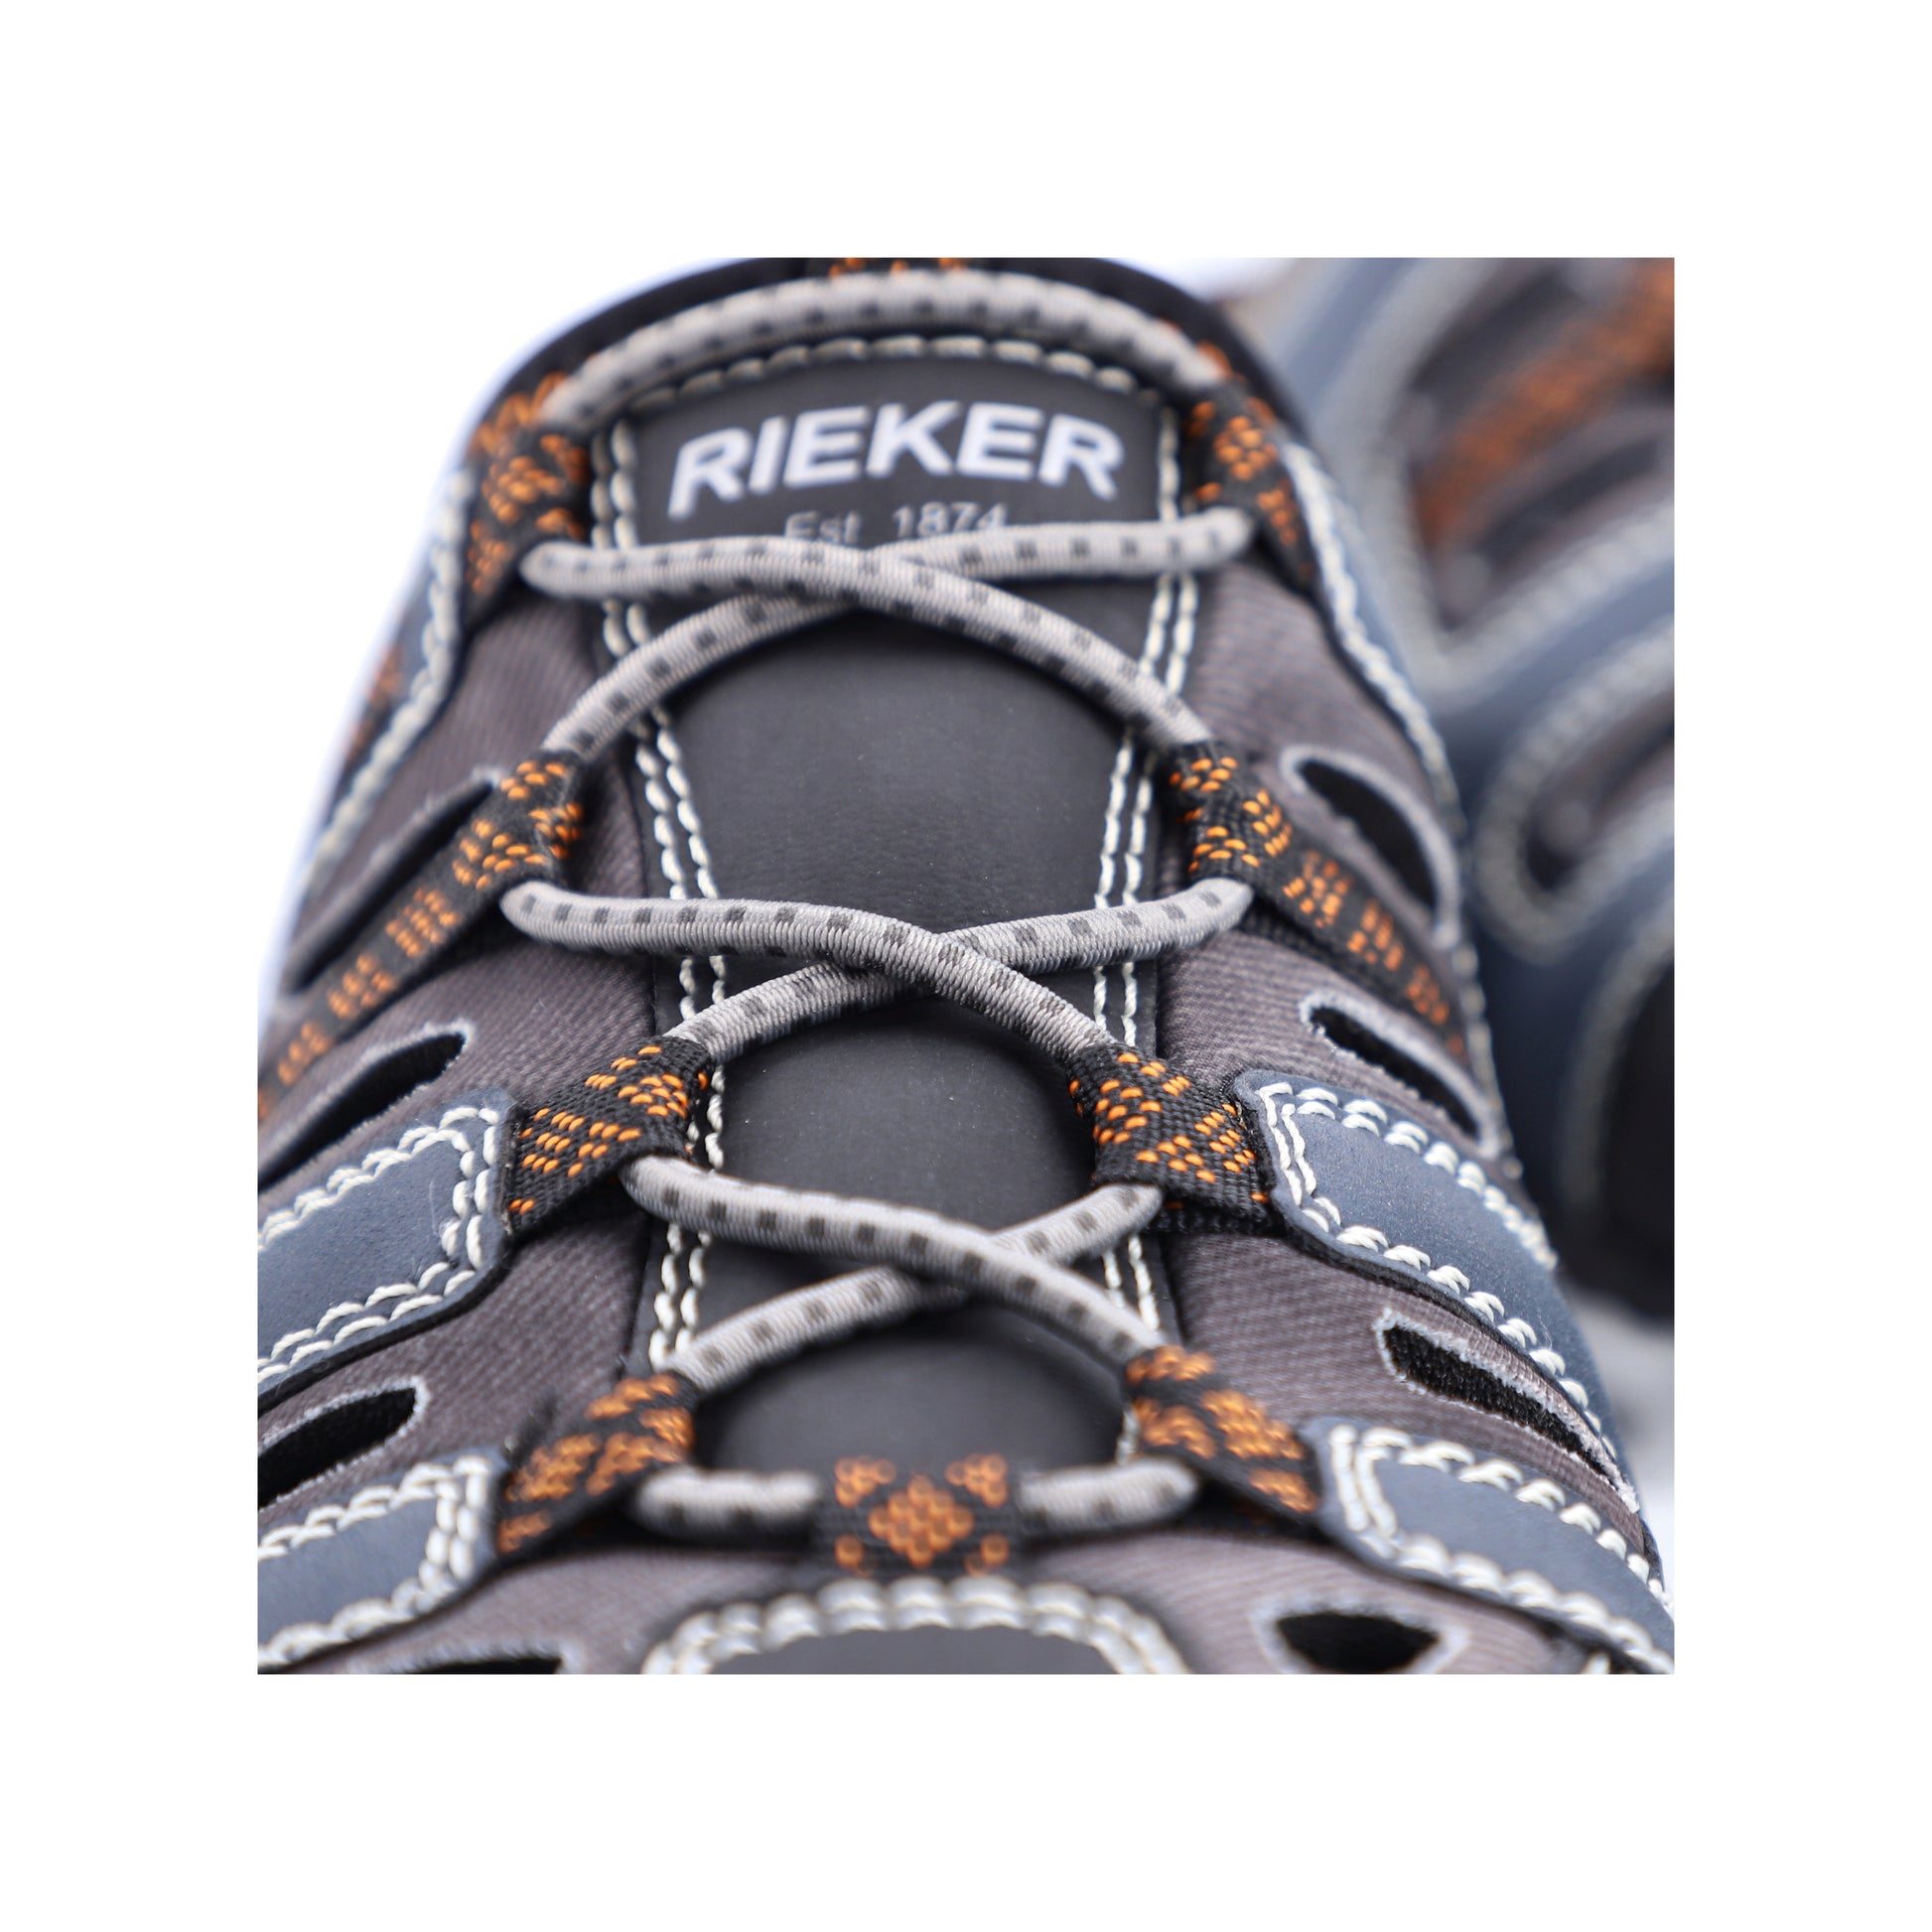 Rieker - Herre sandal tå, 14595-45 - Blå - Hurtig levering - Butik i Nørresundby – Schou Sko